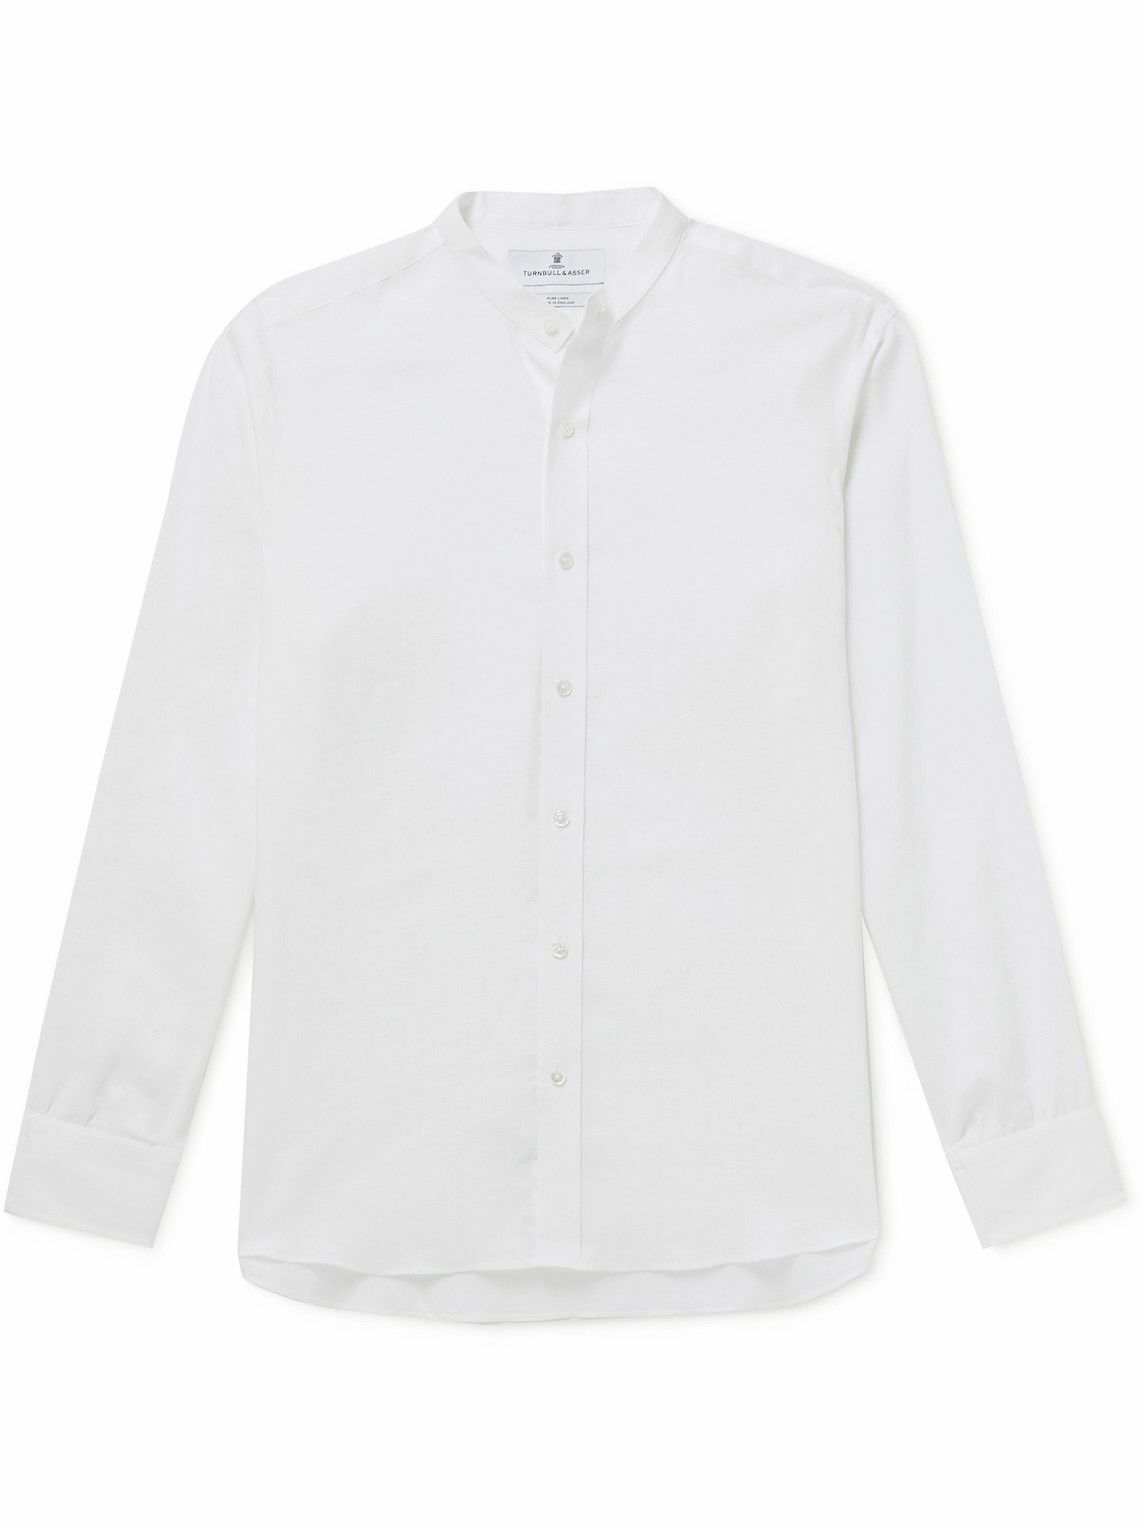 Turnbull & Asser - Blake Grandad-Collar Linen Shirt - White Turnbull ...